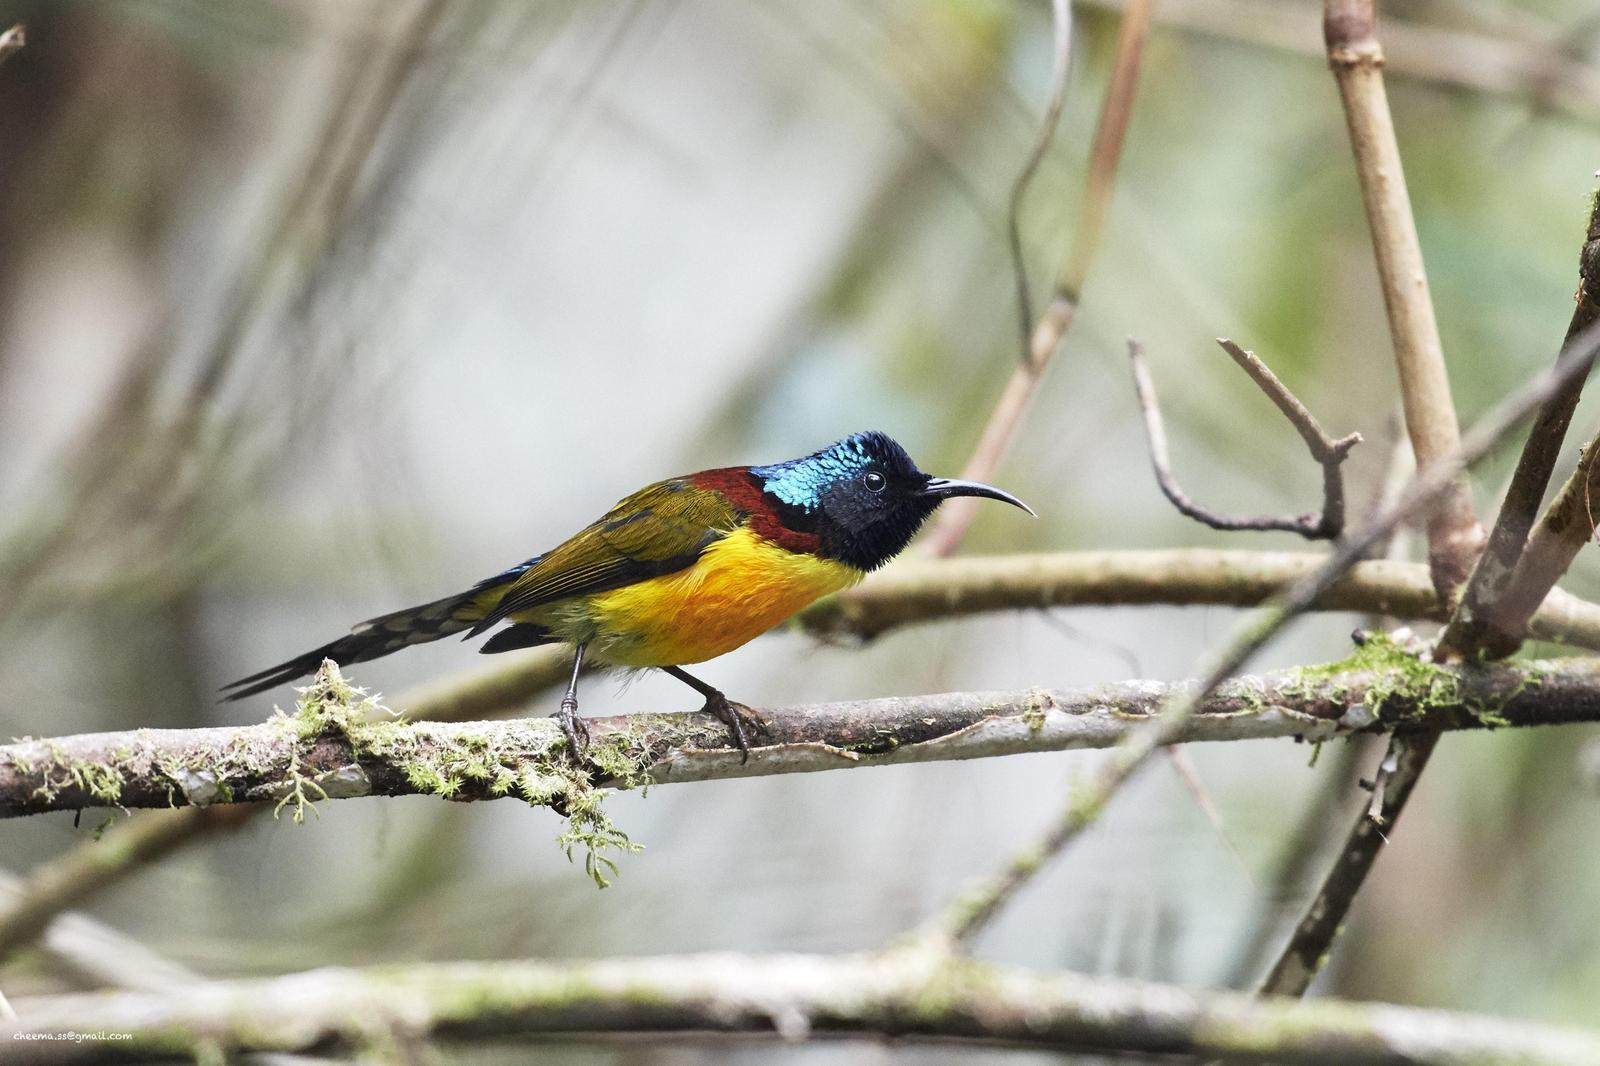 Green-tailed Sunbird Photo by Simepreet Cheema